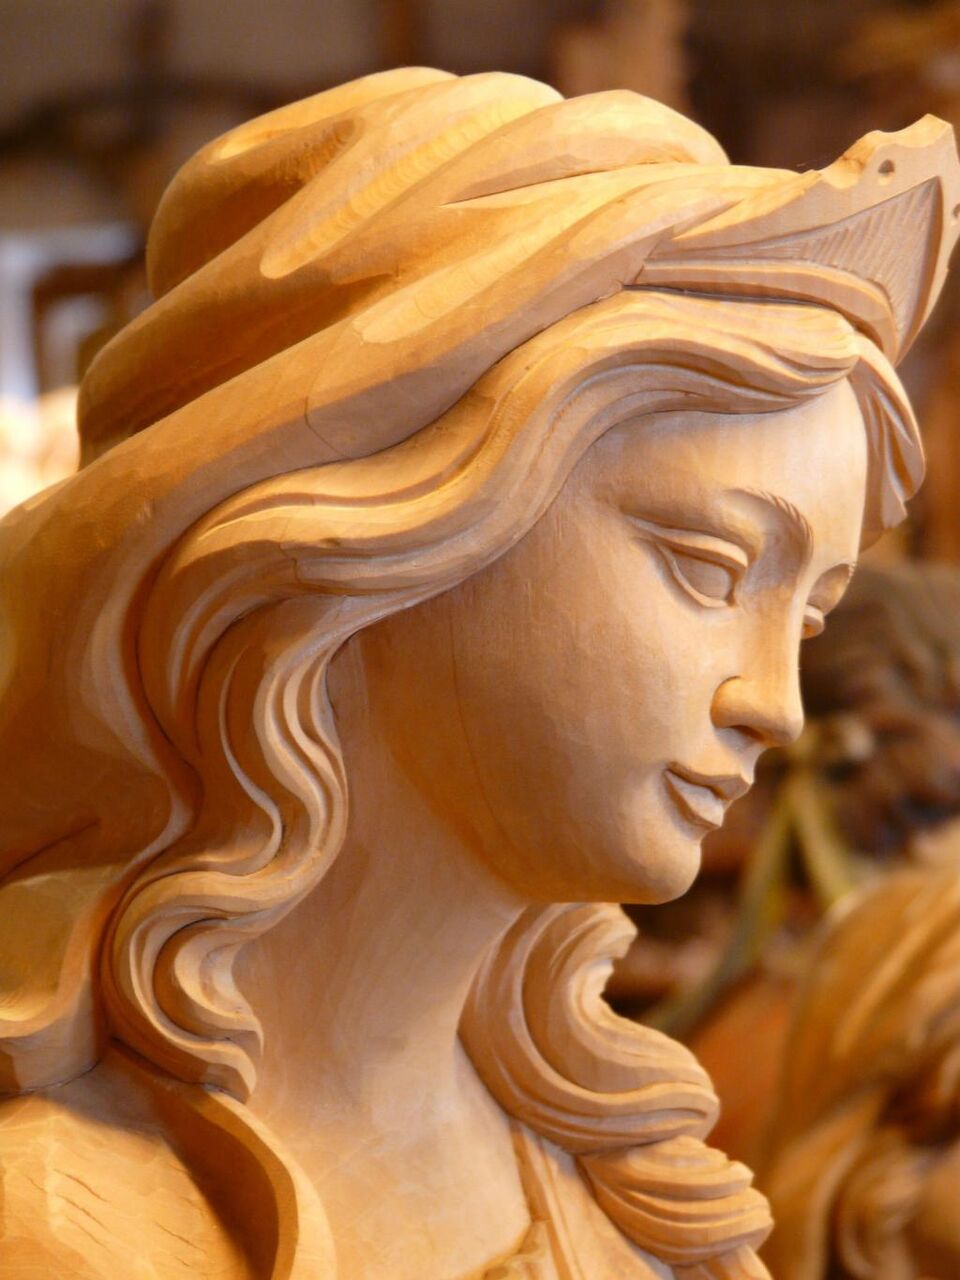 マドンナ 木材 彫刻 ドローイング 女の子 女性 顔 高精細の画像は アンドロイドとダイアナnaaƒÿlecの壁紙素材を入力してください 壁紙